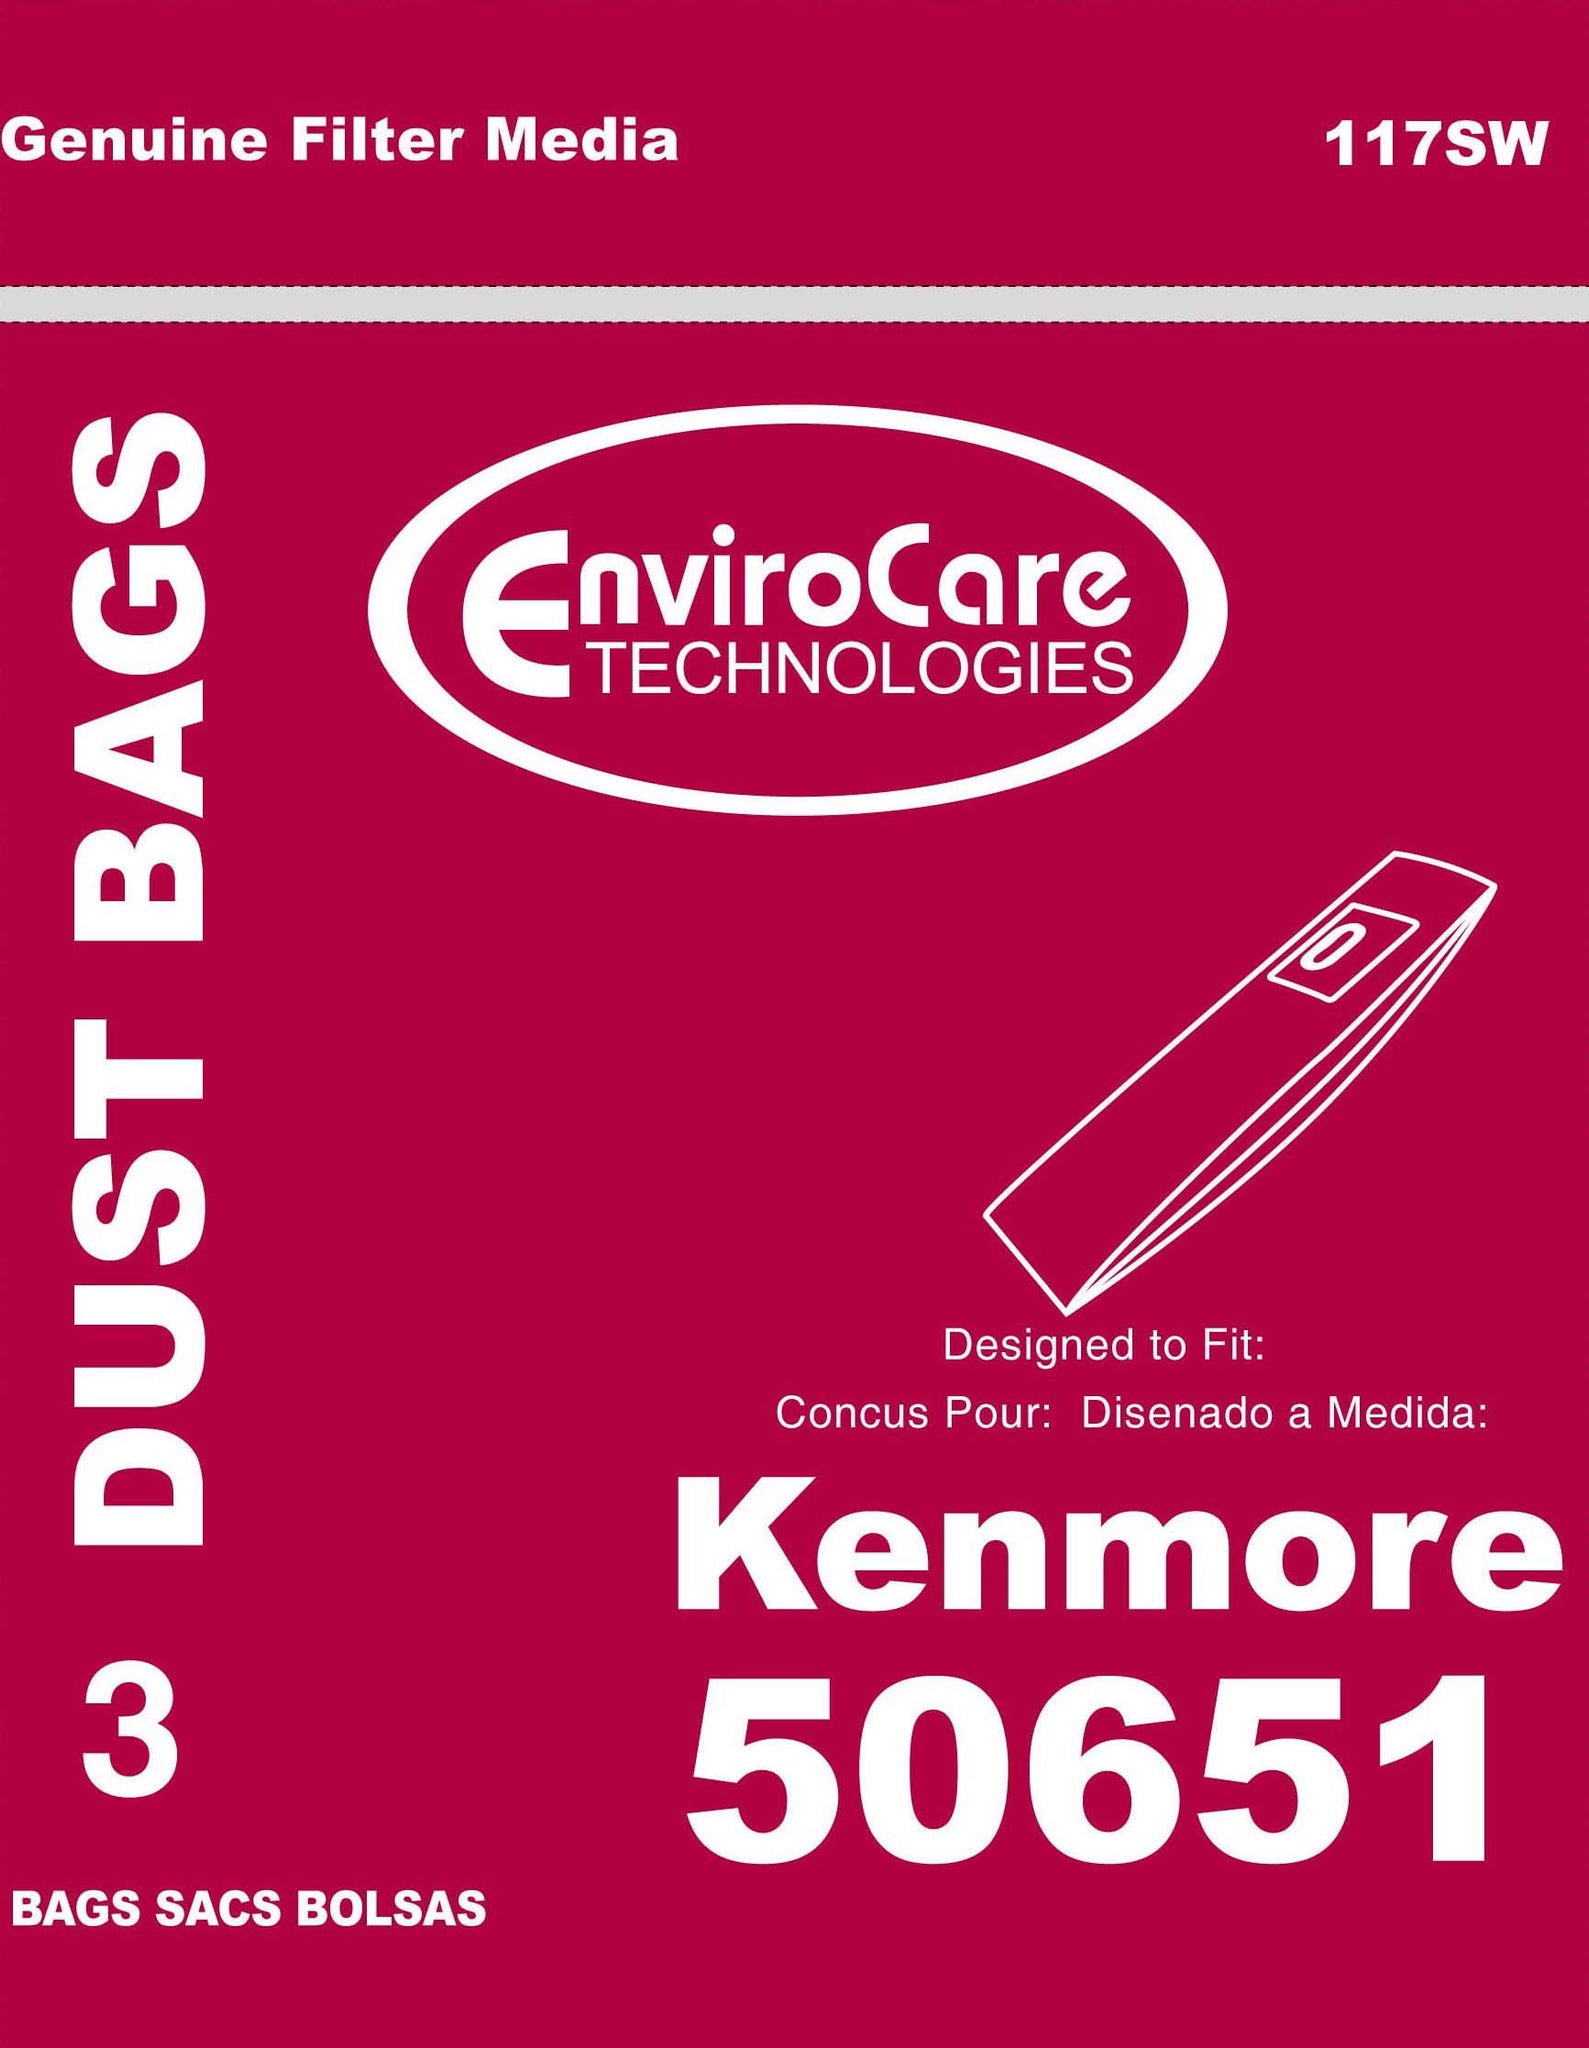 Kenmore 50651 bags